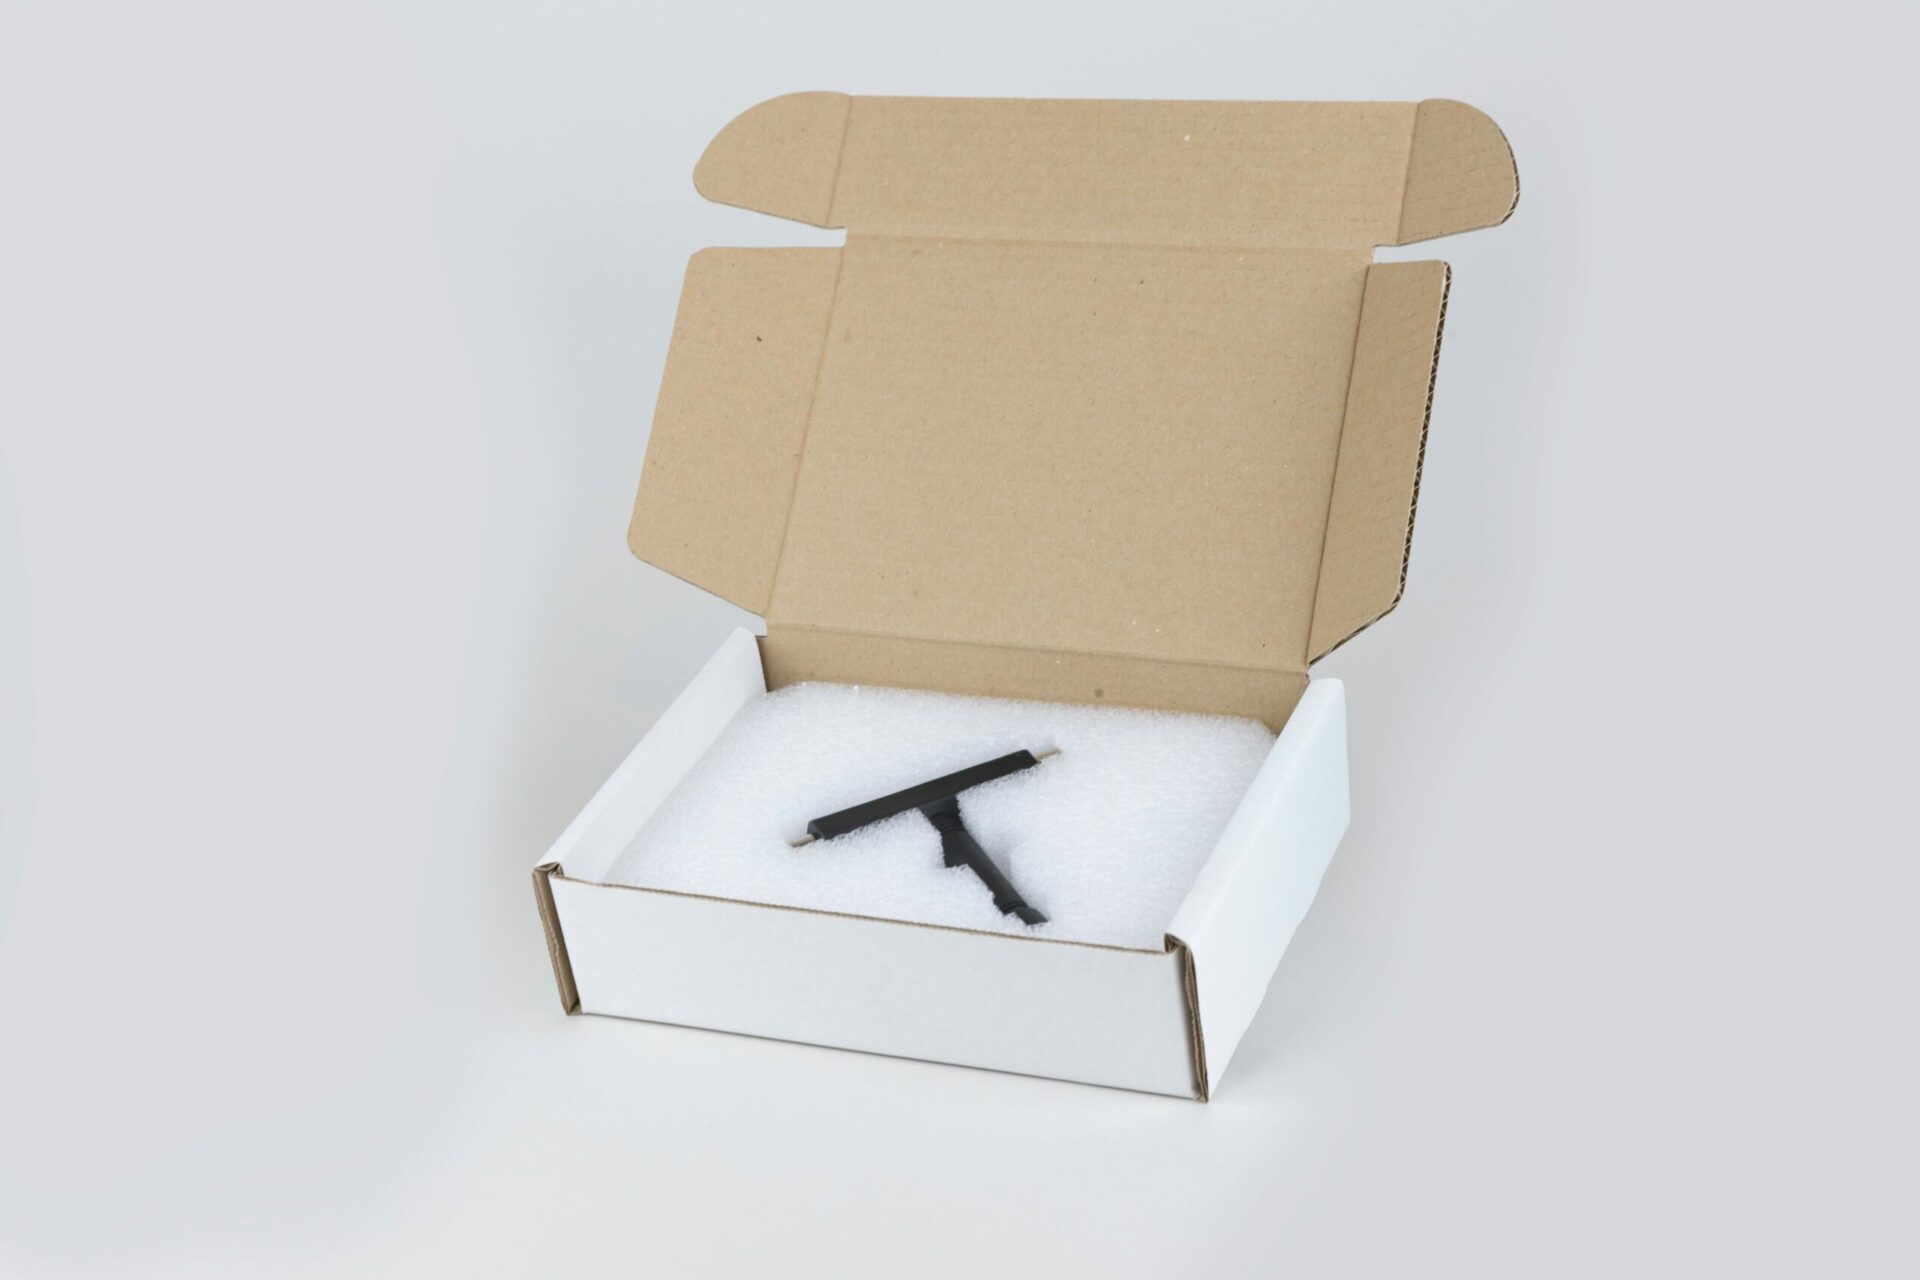 Open box with foam packaging inside.